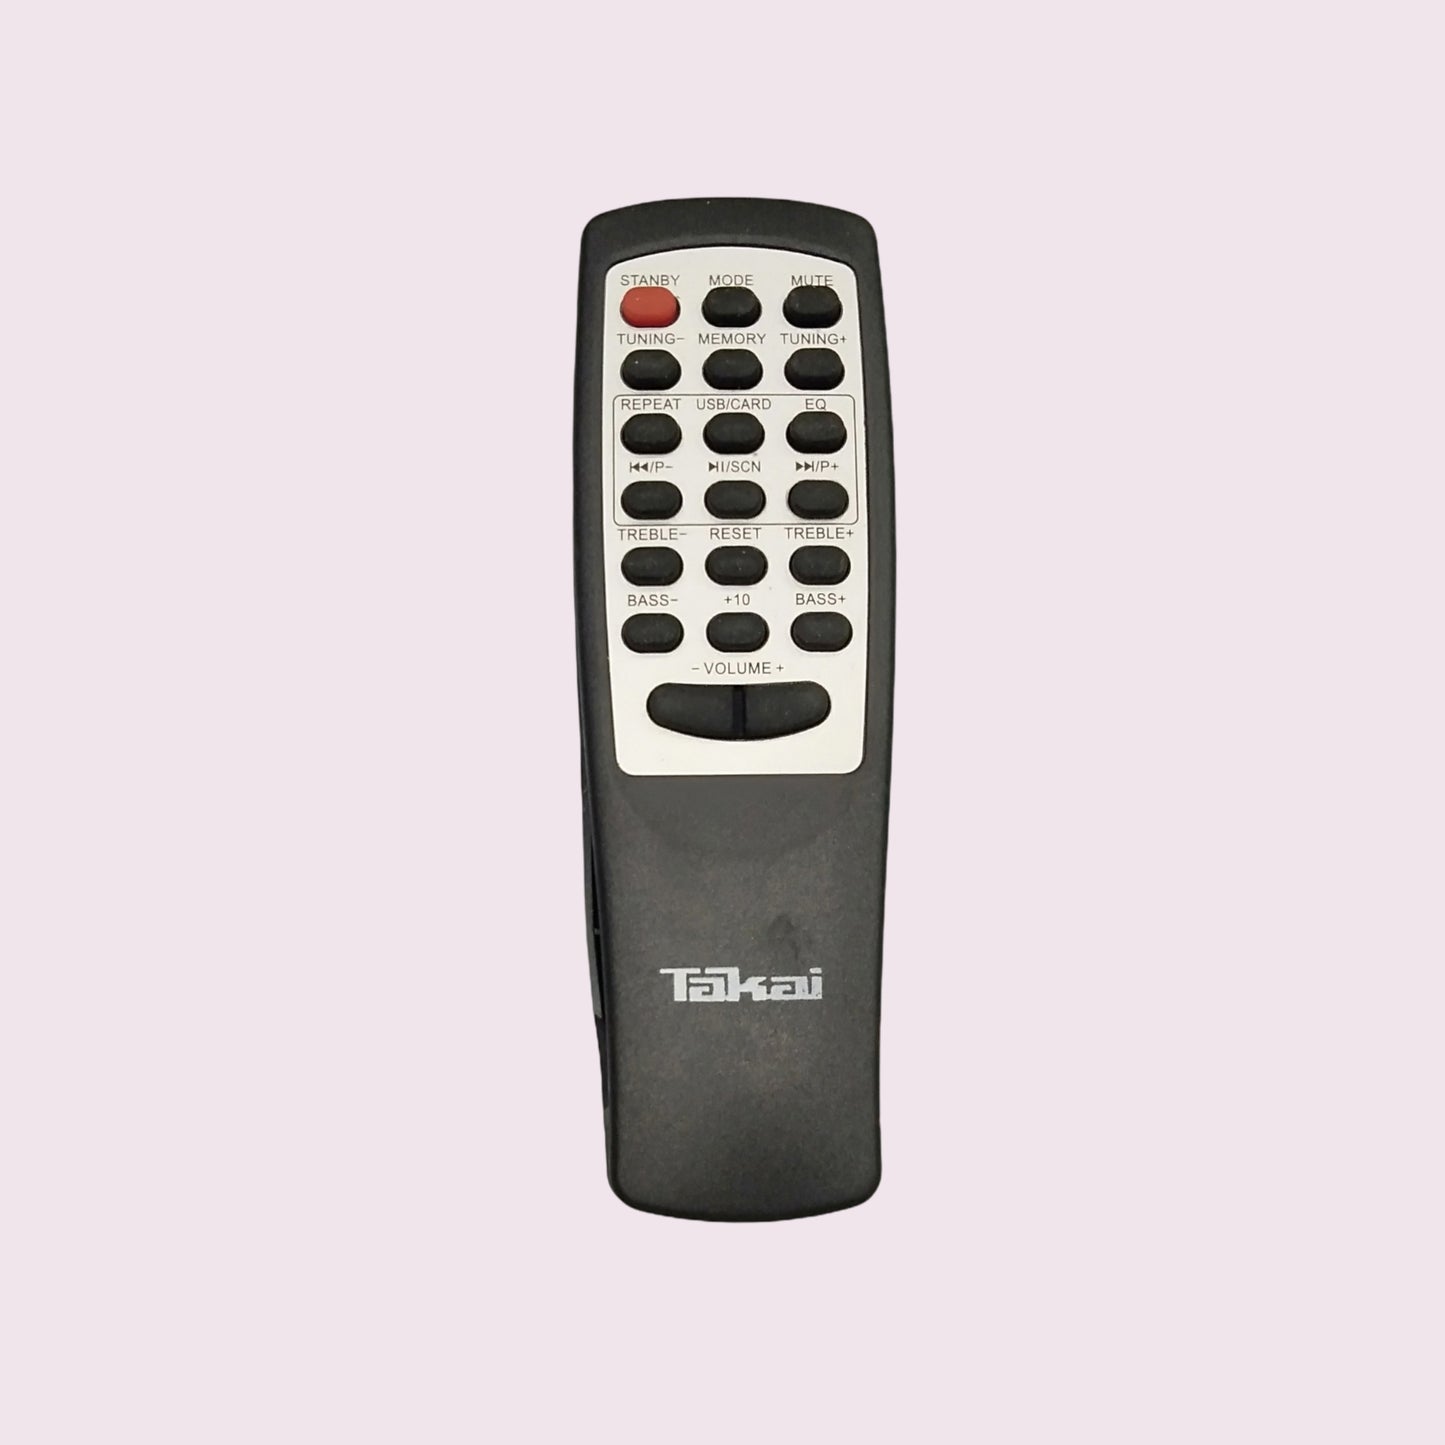 Takai Home Theater Remote Control * Compatible*High Sensitivity (HM29)